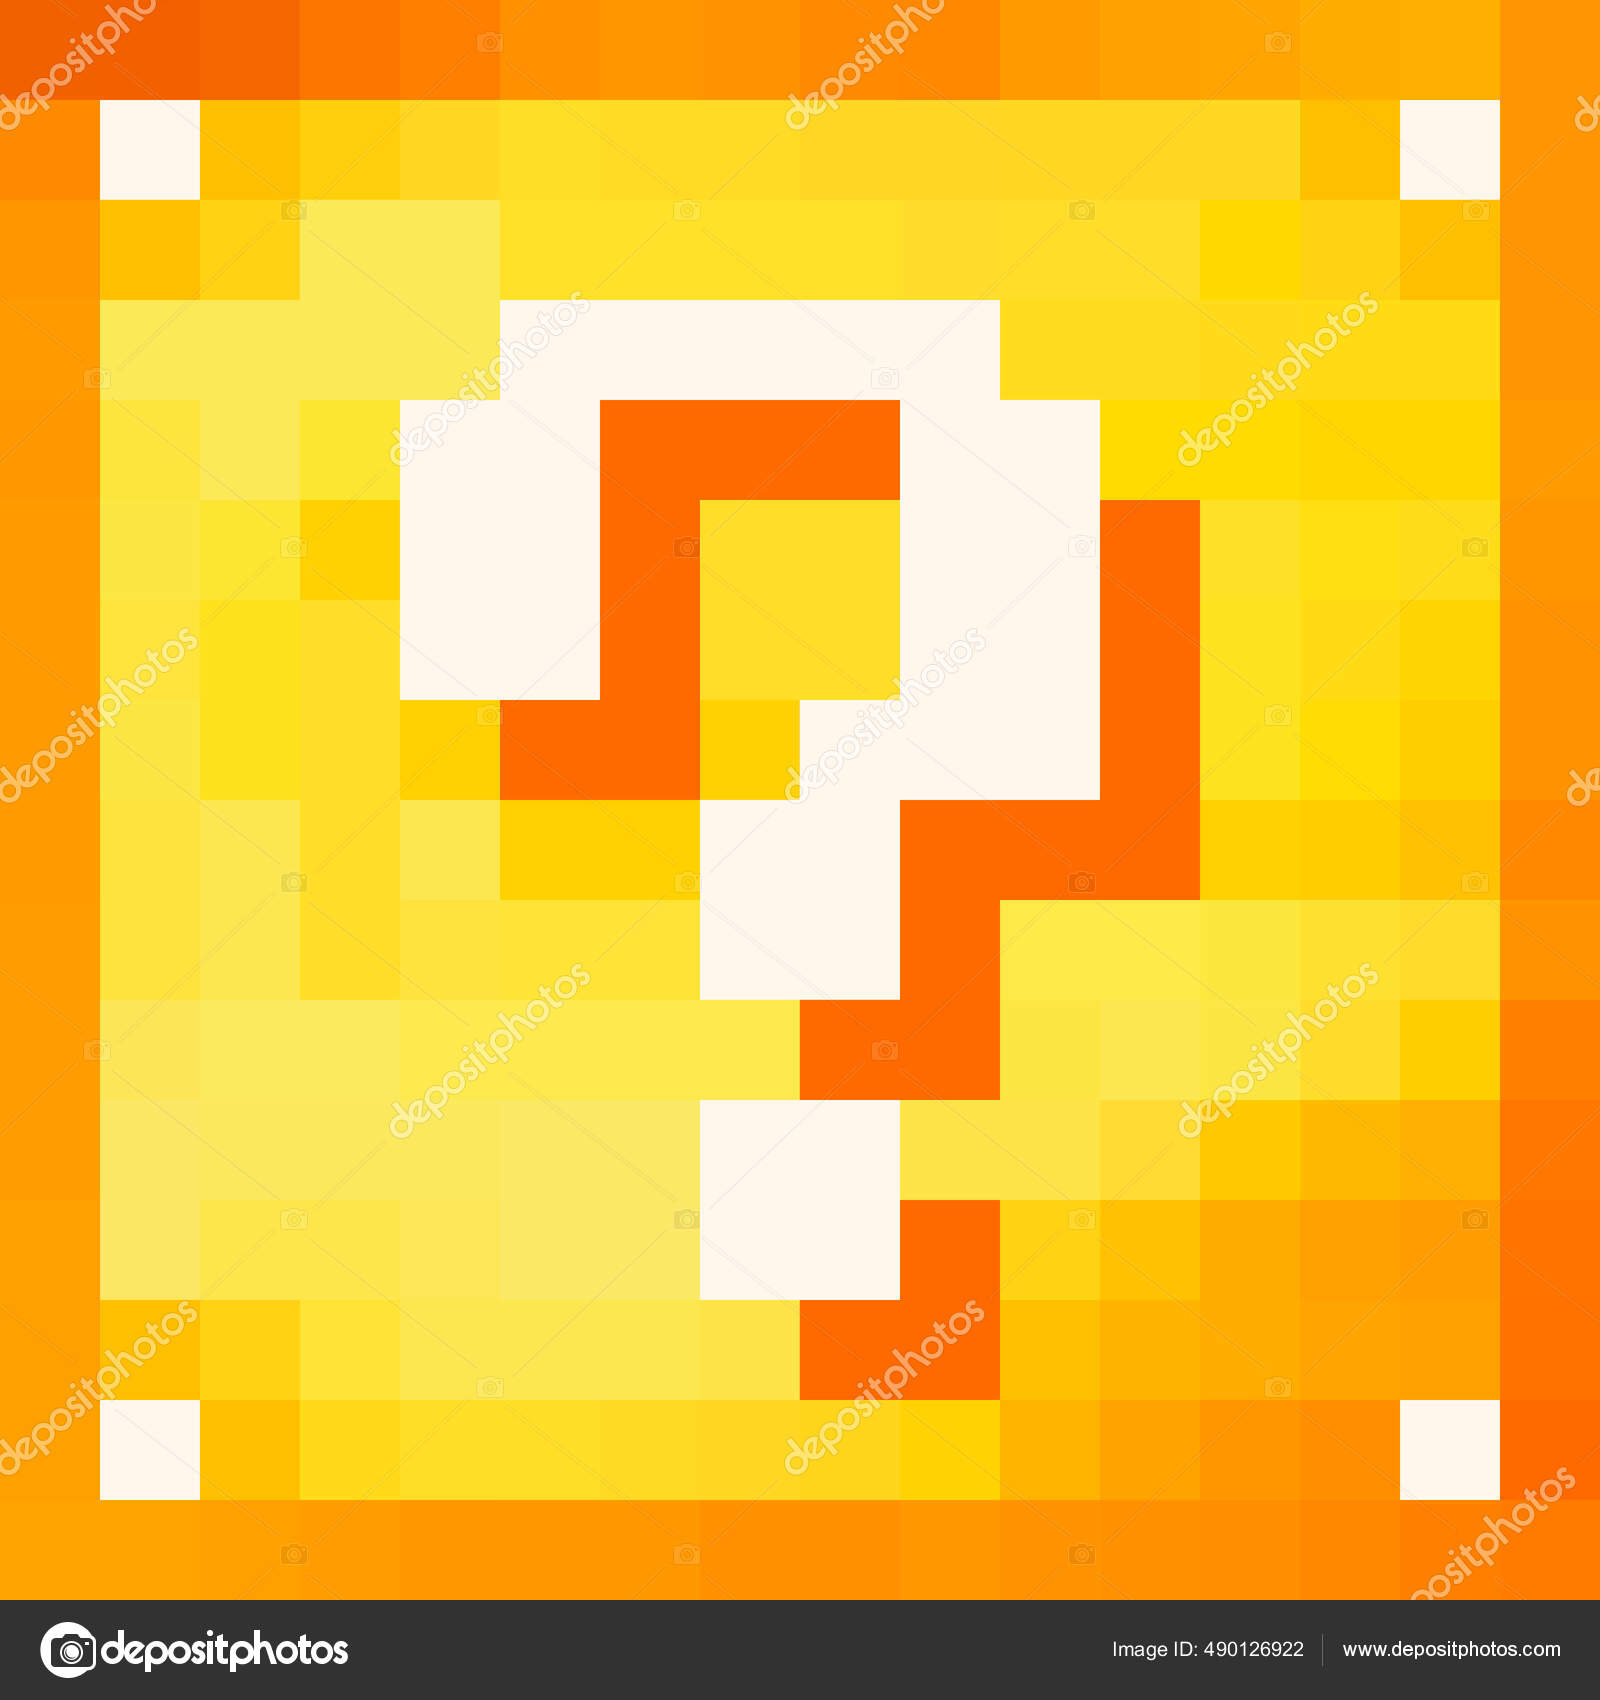 Caráter Pixel Papel Papelaria Blocos Clássicos Layout Papel Diagrama  Detalhado vetor(es) de stock de ©poppystyle_soloma 572928352